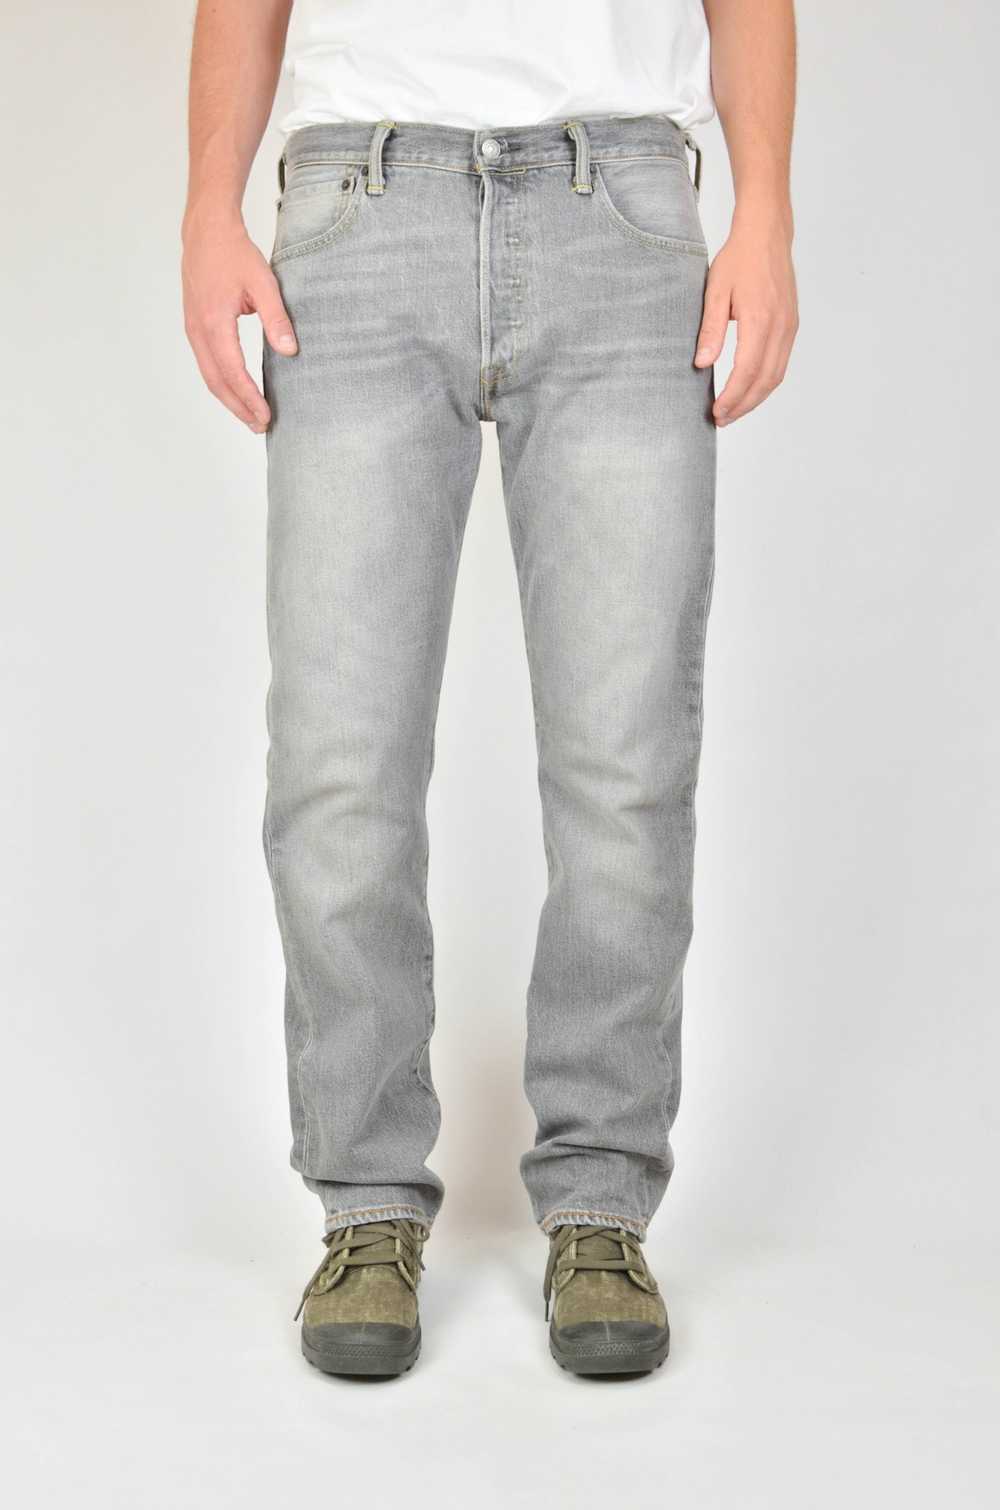 Levi's Vintage Levis 501 Jeans Grey - image 3